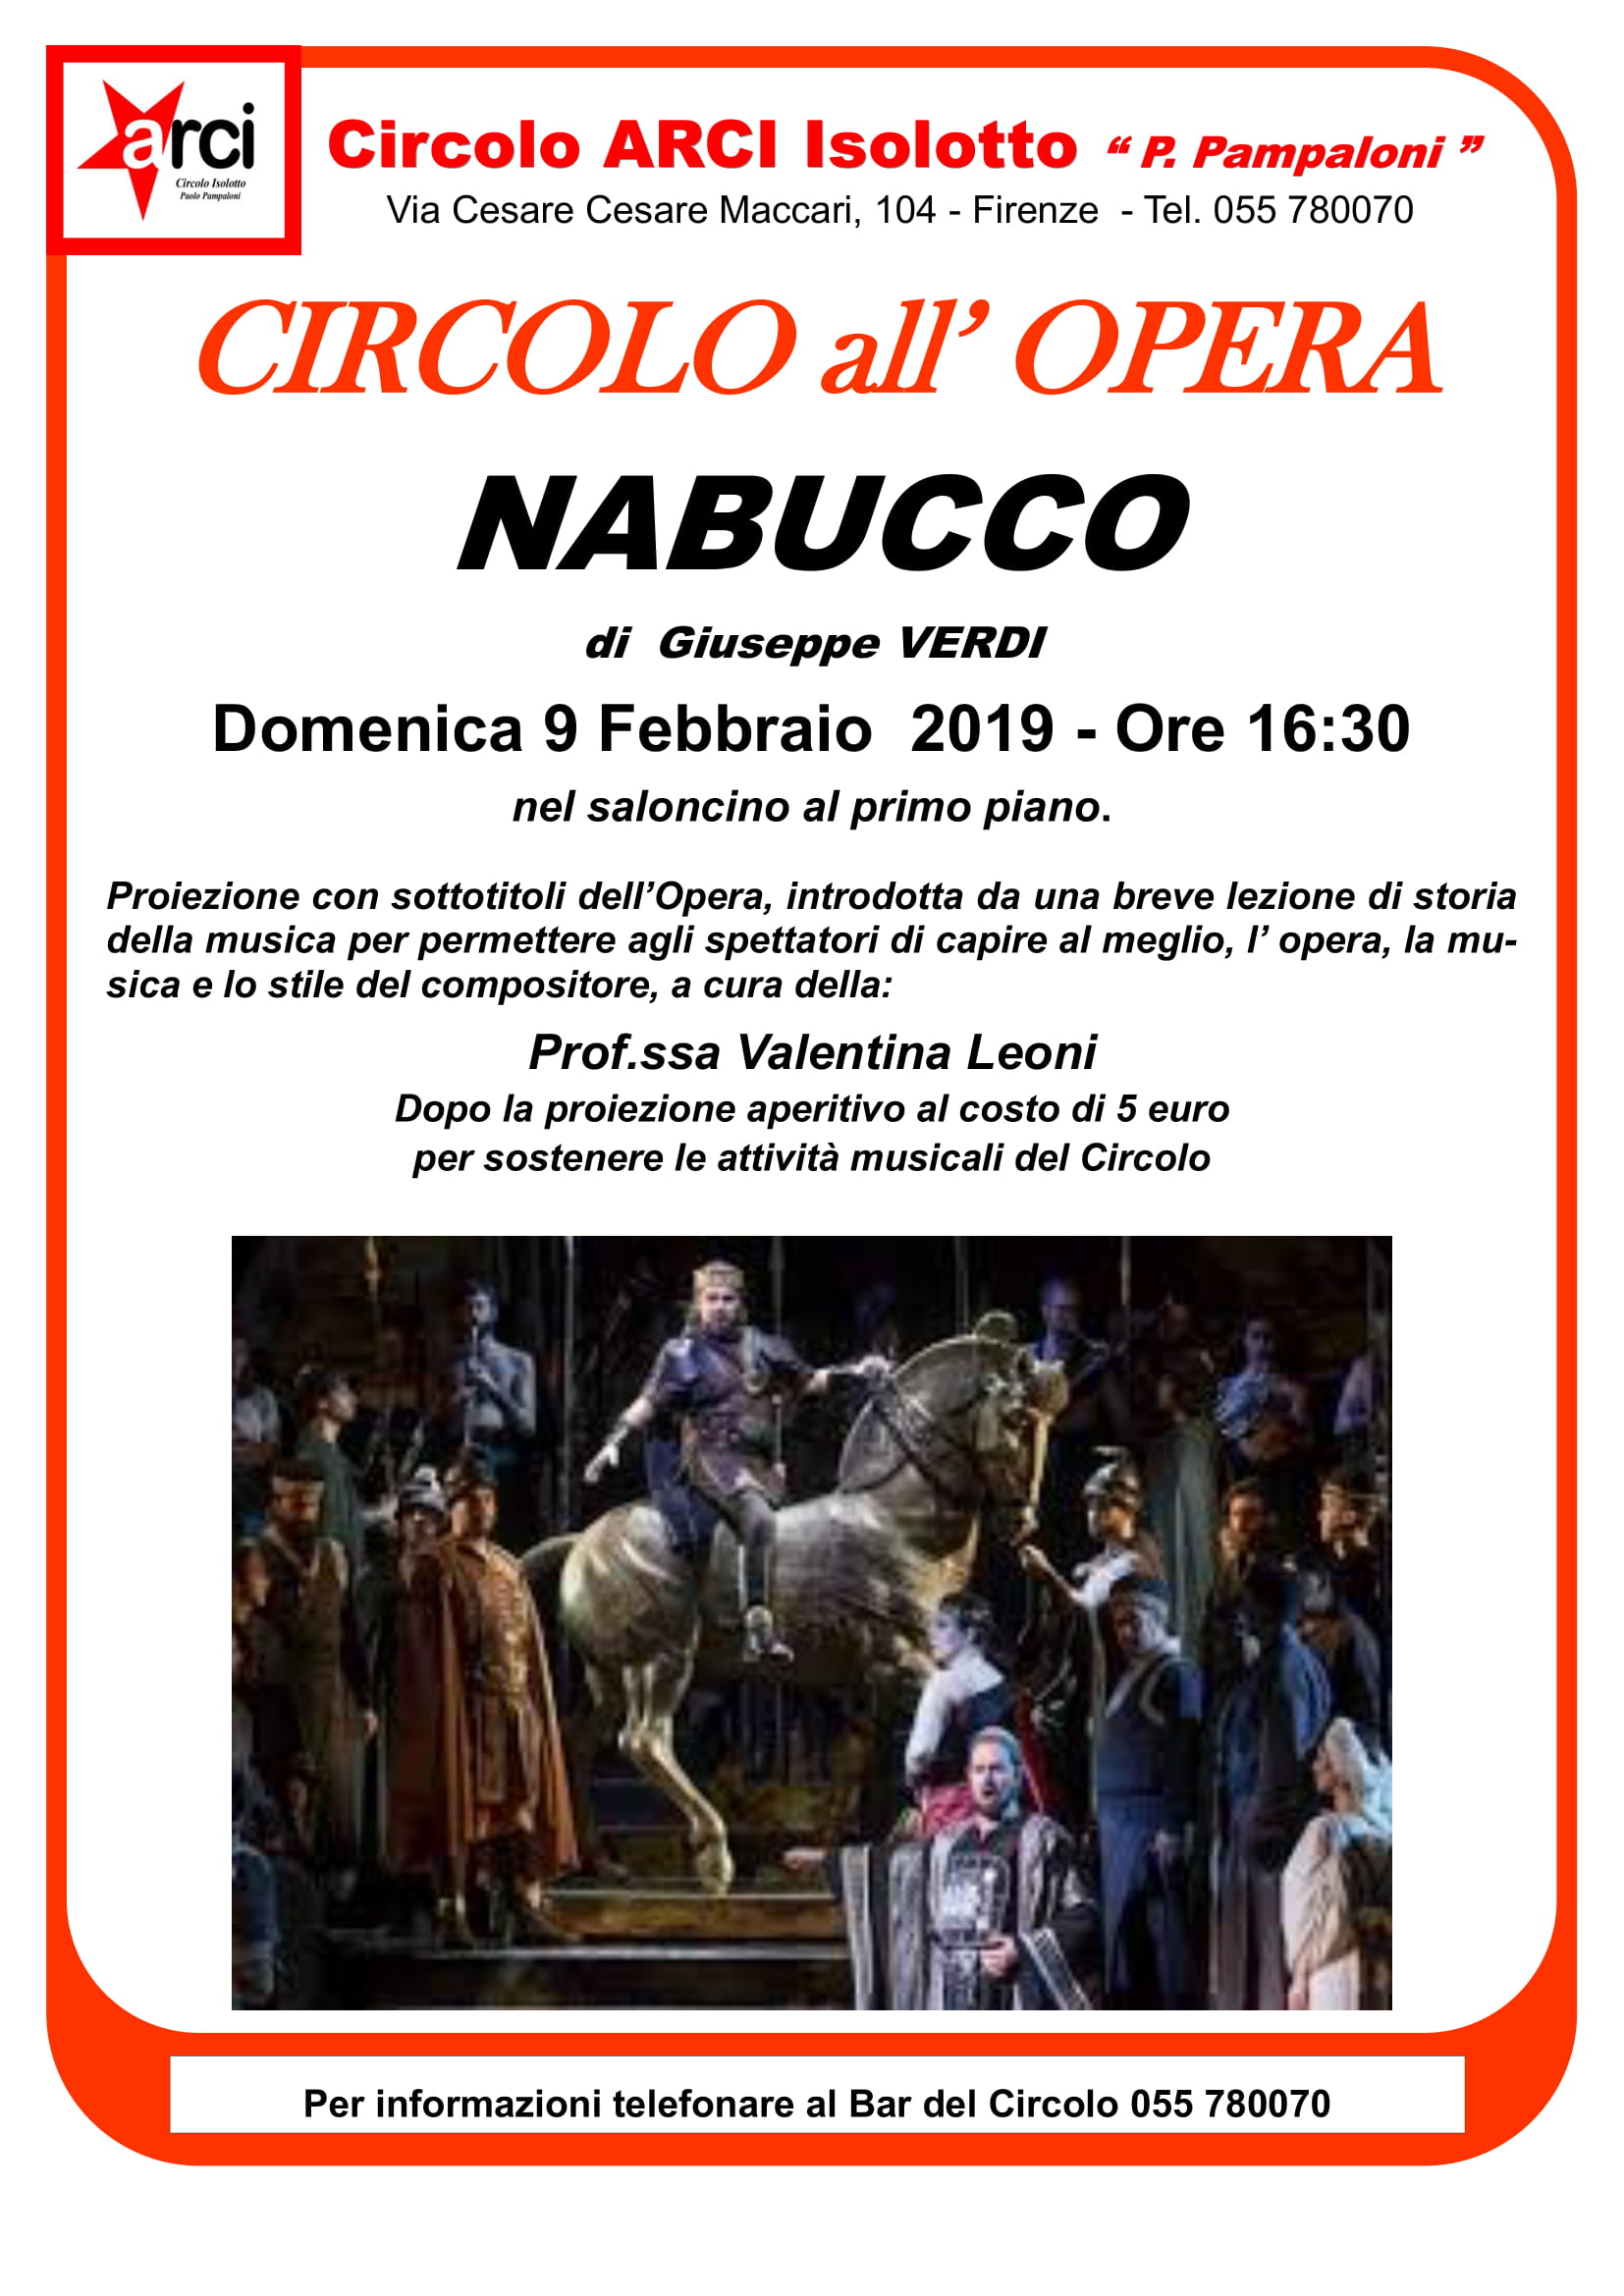 Al Circolo Arci Isolotto Nabucco di Giuseppe nuovo appuntamento con “Il Circolo all’Opera”